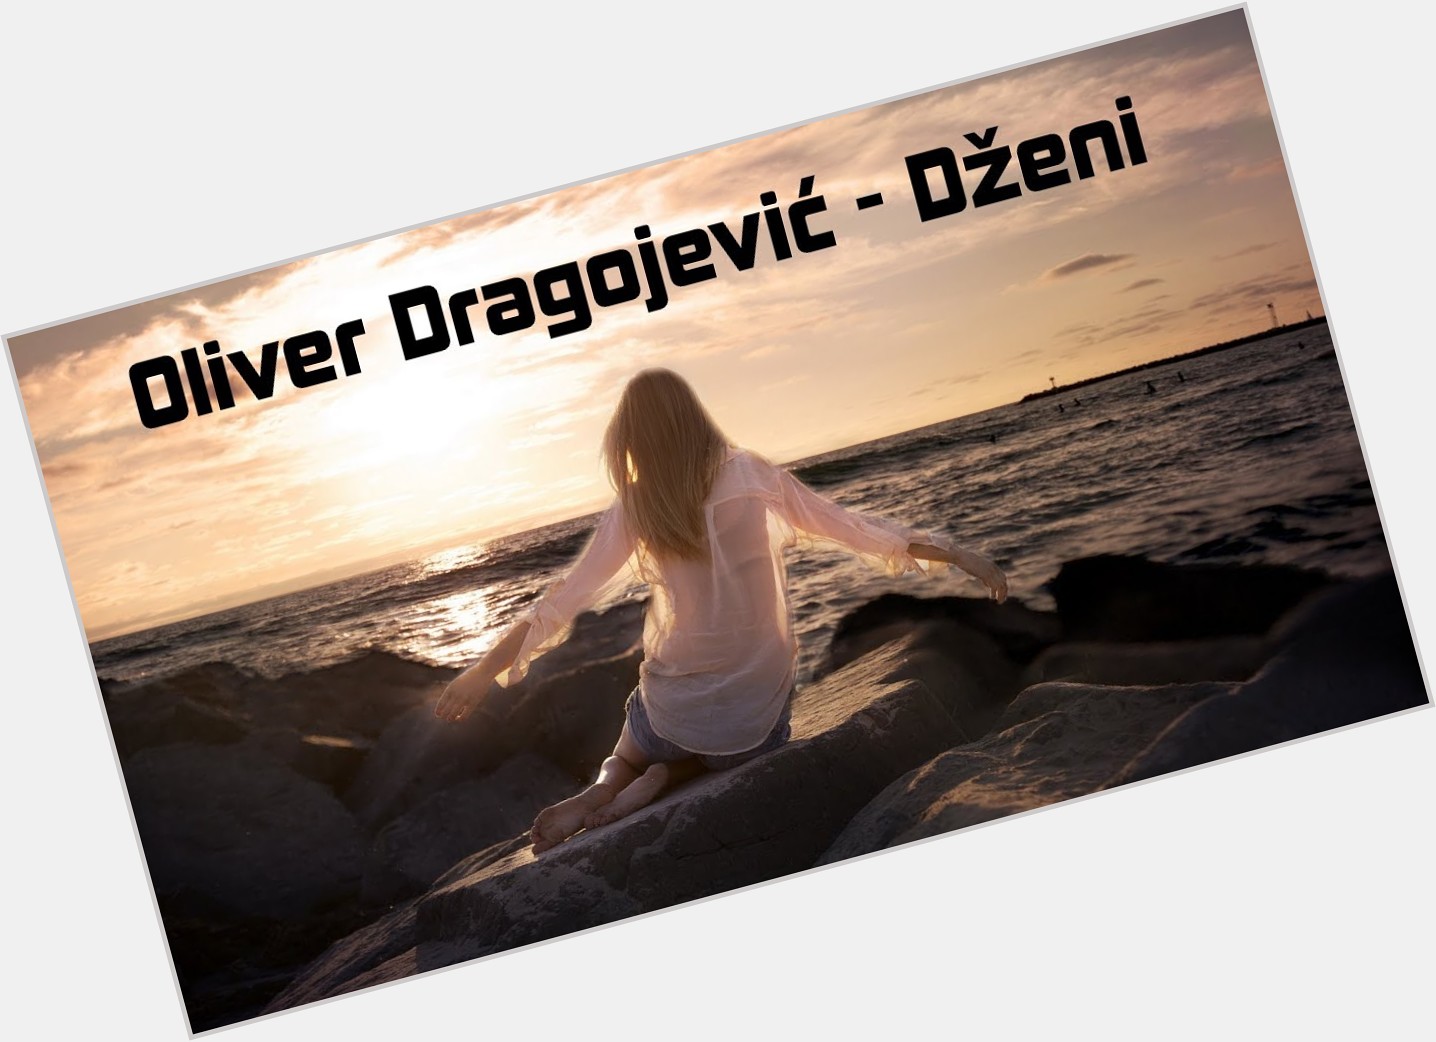 Oliver Dragojevic shirtless bikini